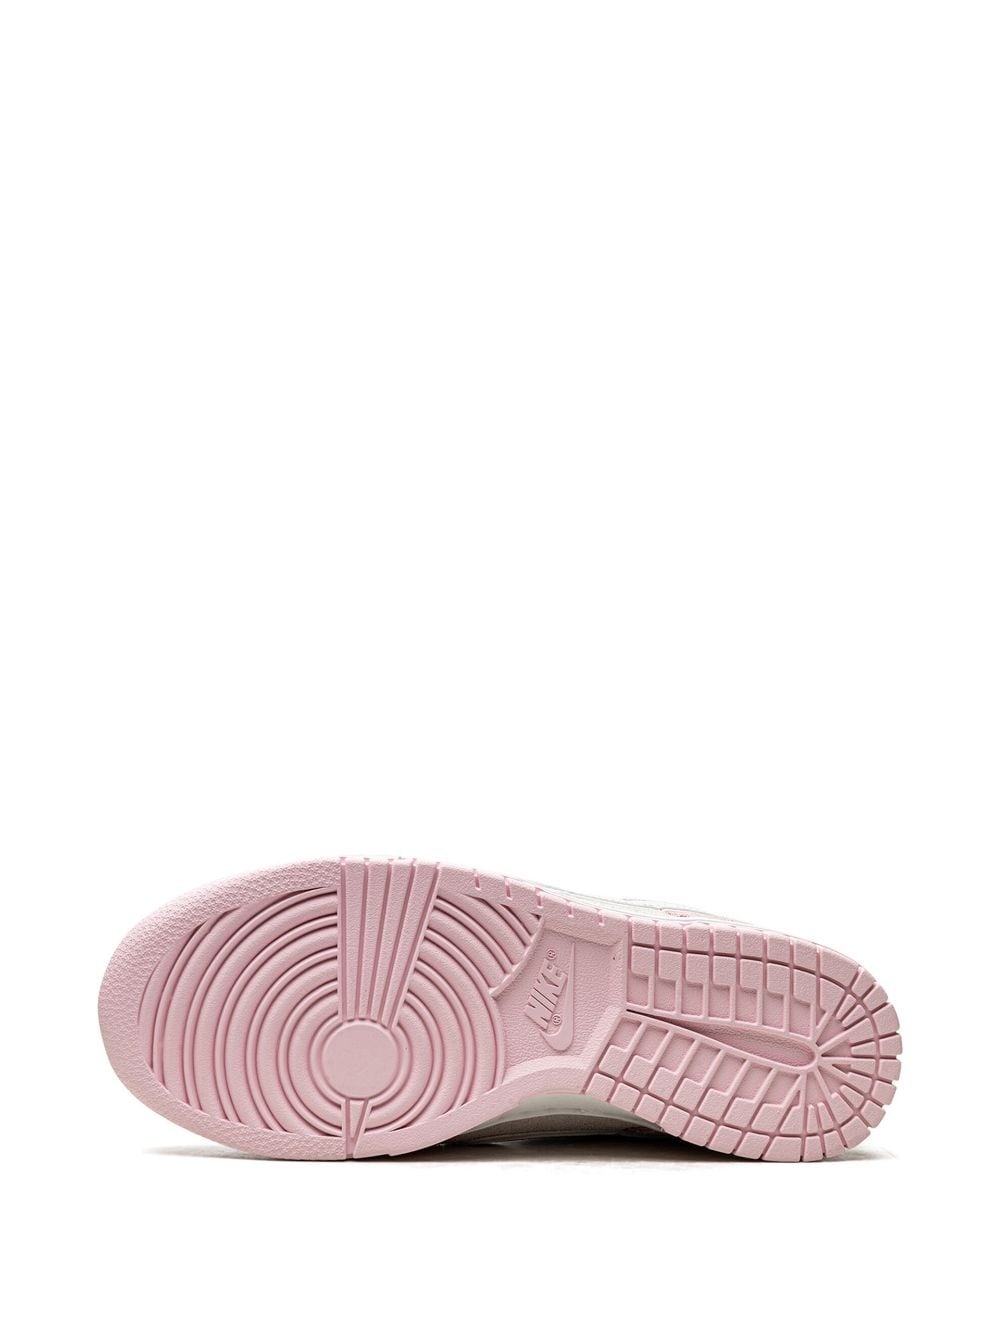 Dunk Low LX "Pink Foam" sneakers - 4